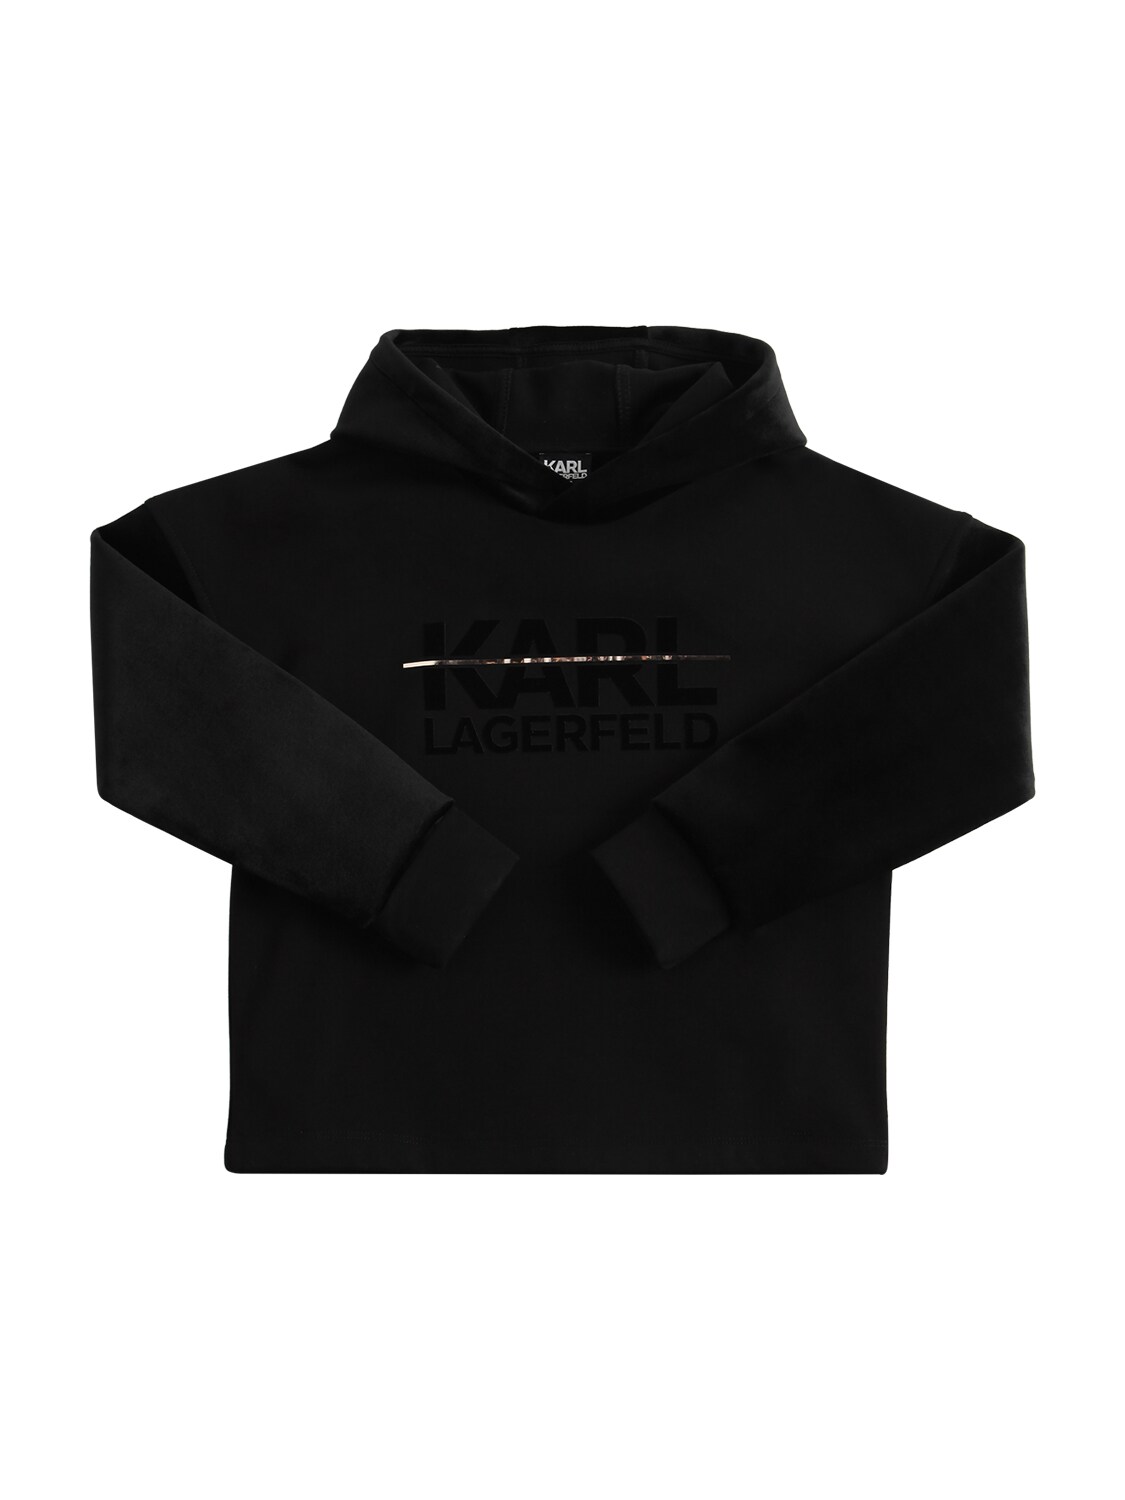 KARL LAGERFELD Logo Neoprene Sweatshirt Hoodie